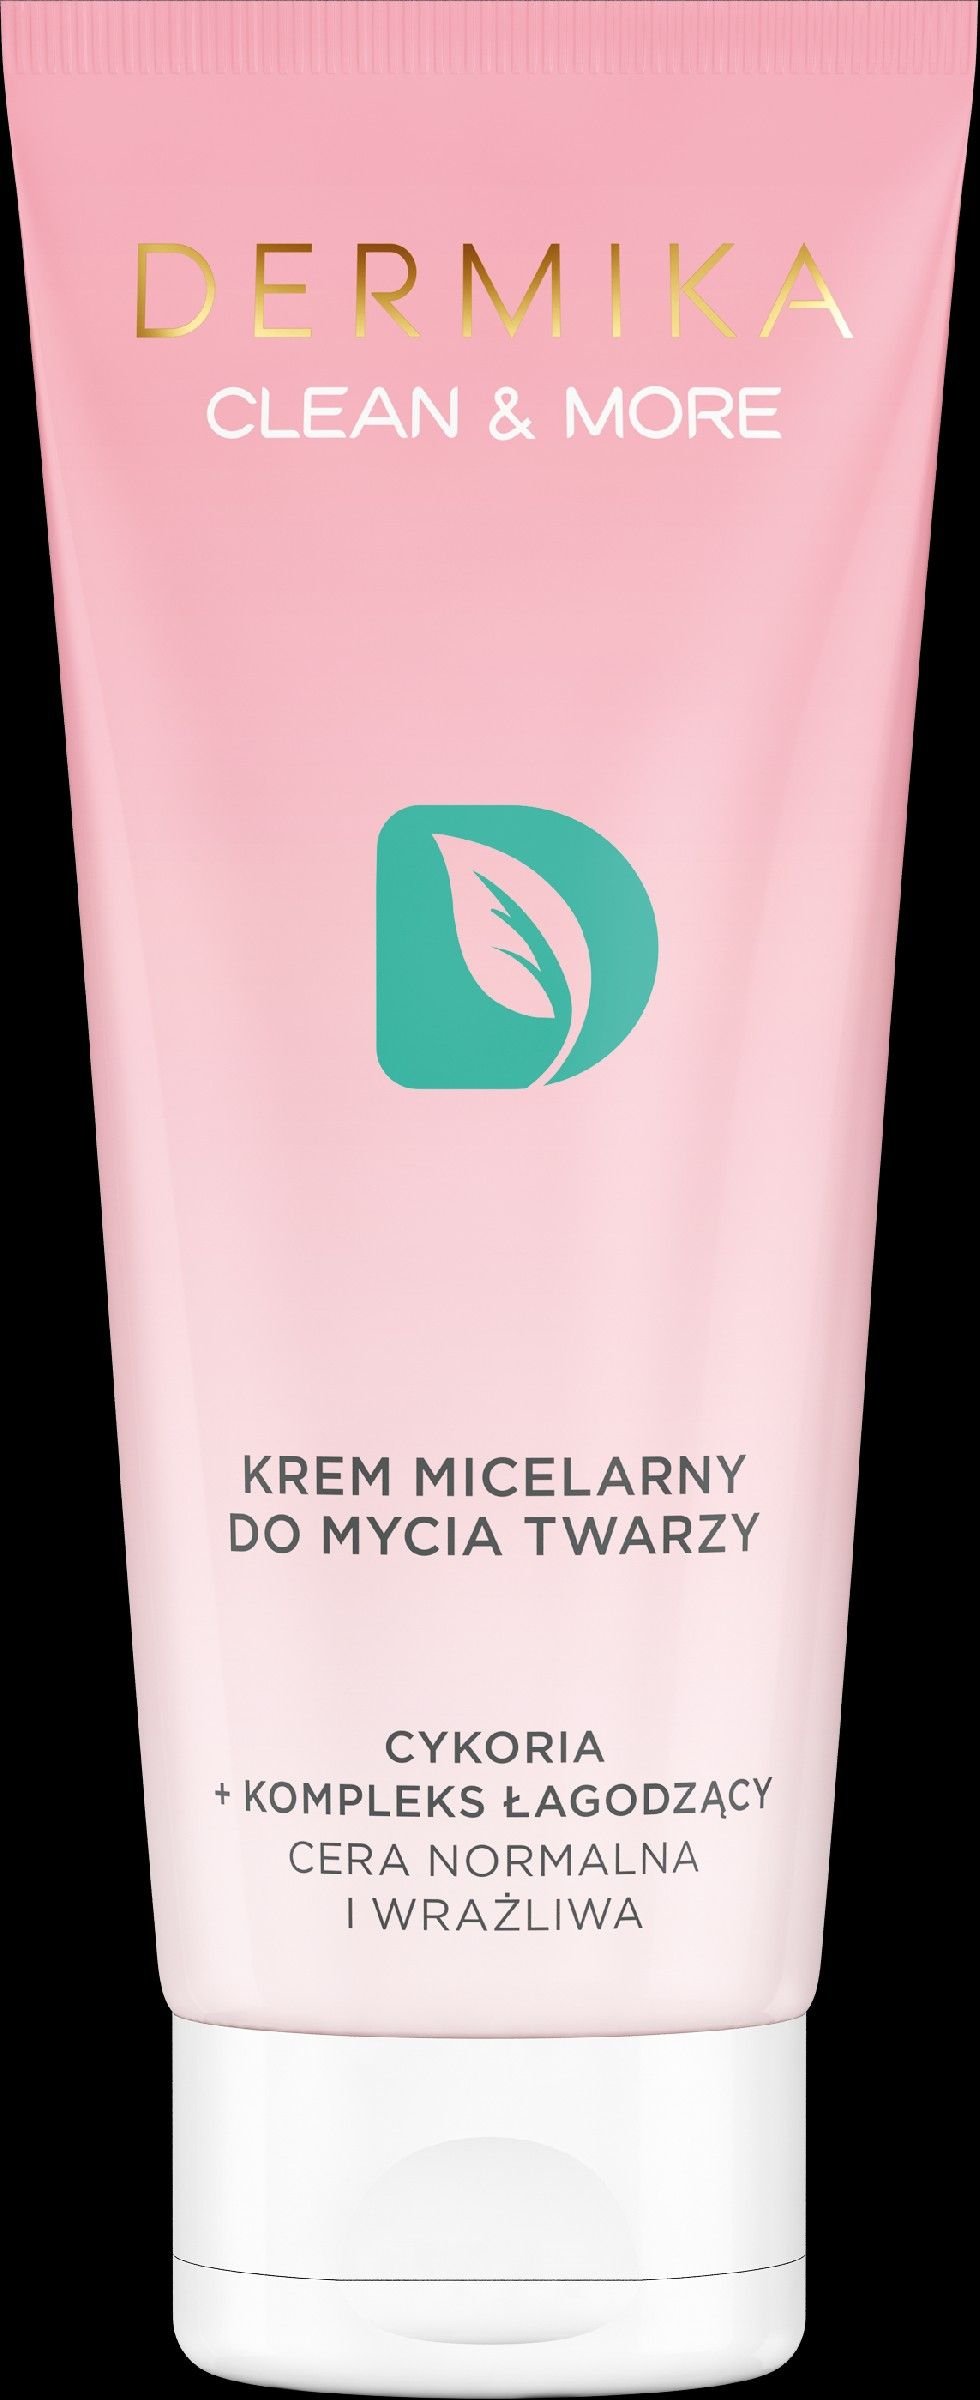 Dermika Clean & More Krem micelarny do mycia twarzy - cera normalna i wraÅ¼liwa 150ml